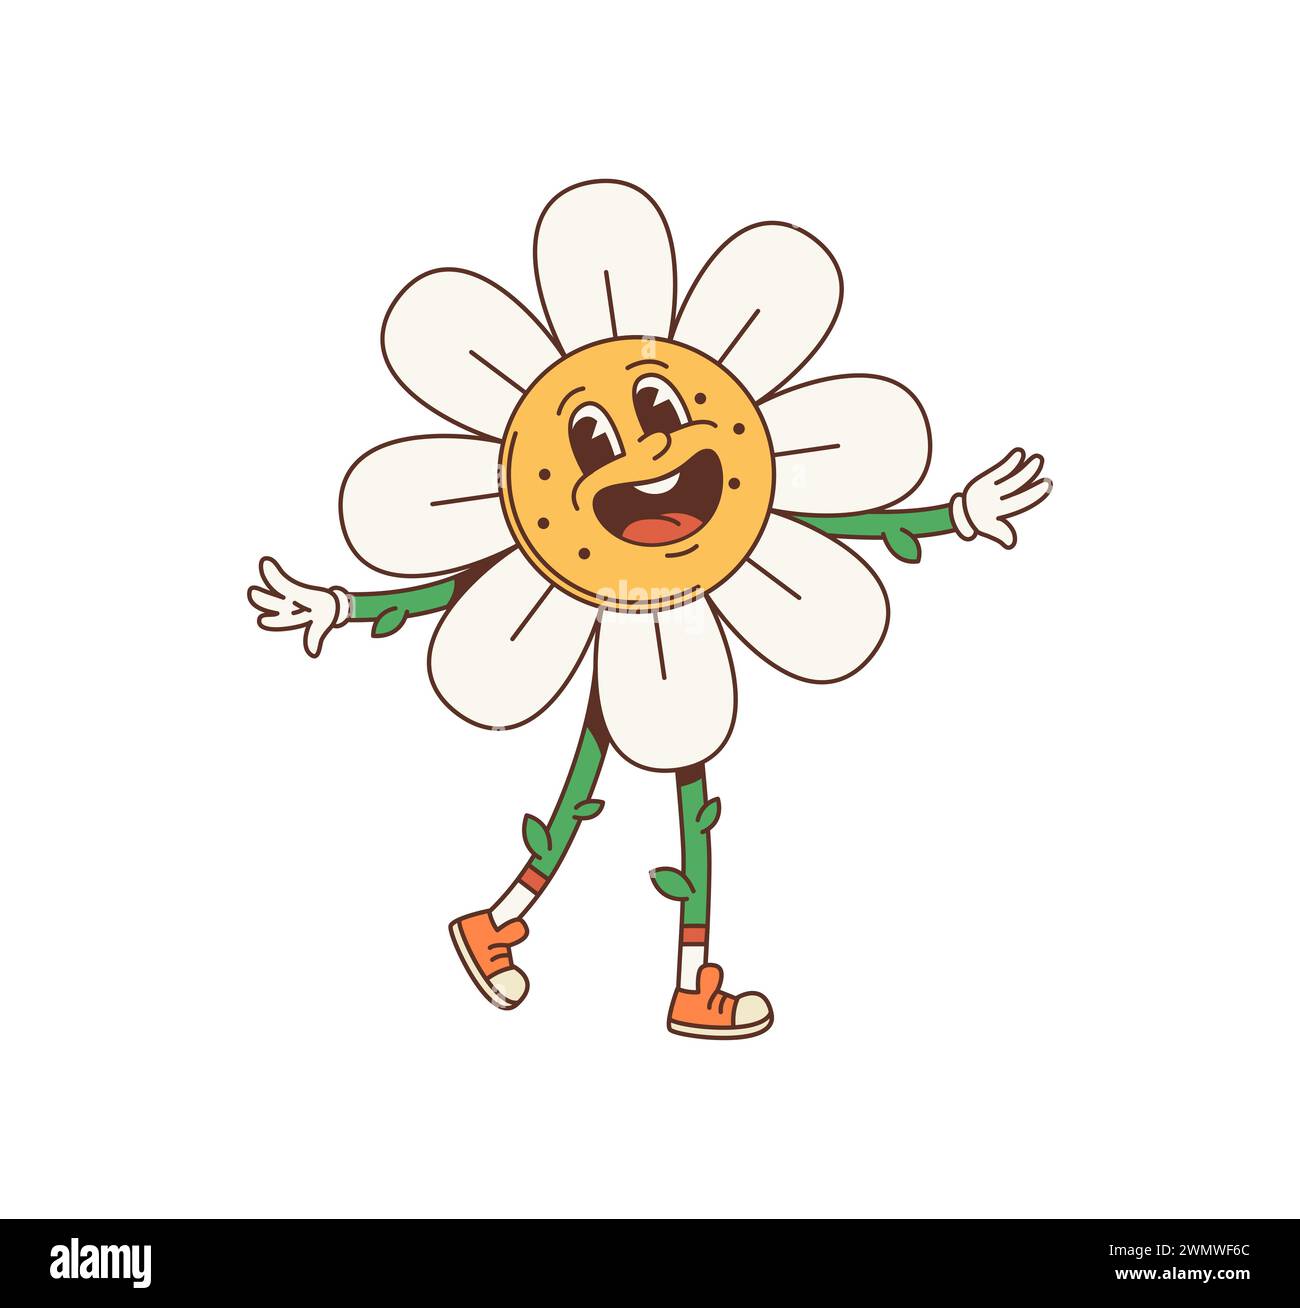 Cartoon Gänseblümchen, grooviger Charakter. Isolierte Vektor psychedelische Kamillenblütenfigur mit weißen Blüten, Stängelbeinen, großen, leckeren Augen, breitem, charmantem Lächeln, und eine entspannte, grossartige Sommerstimmung Stock Vektor